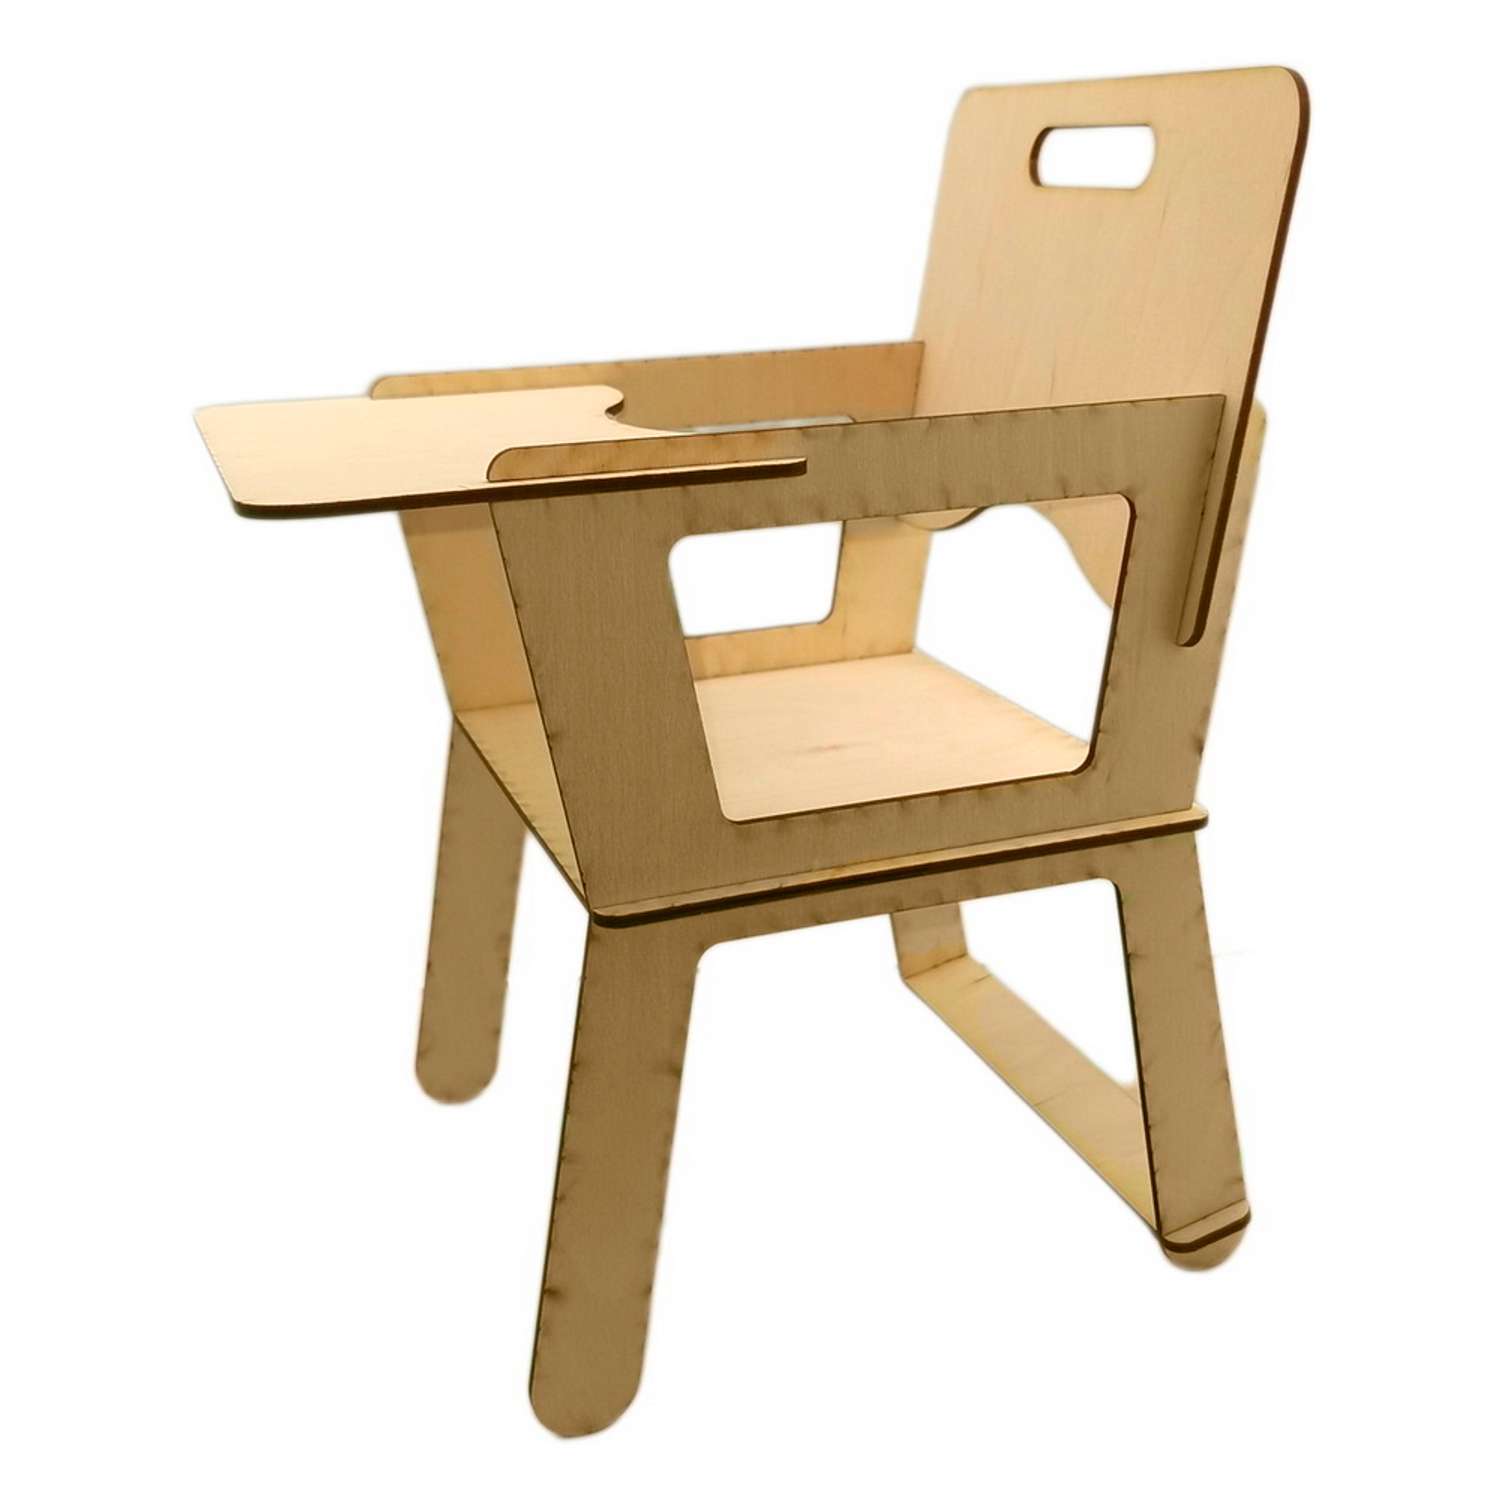 Детский стульчик Кузя Нотка - luchistii-sudak.ru Детская мебель от производителя.